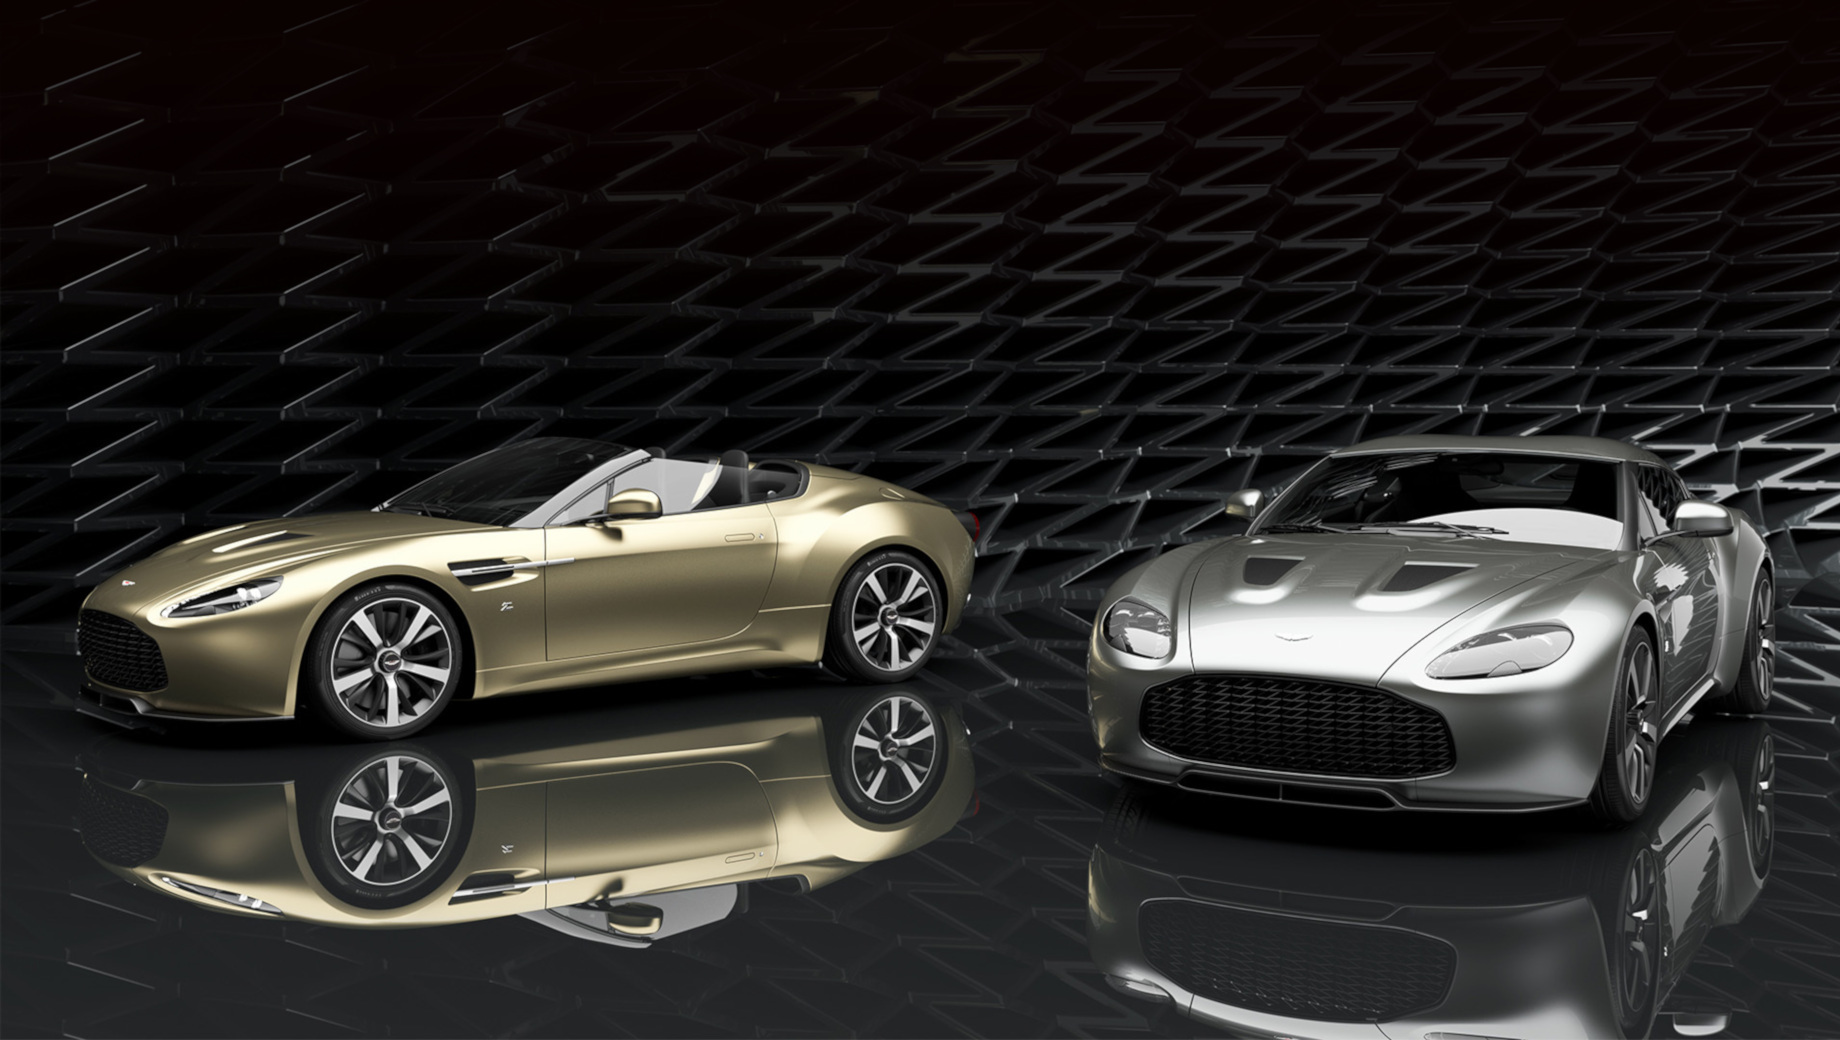 Aston martin v12 zagato,Aston martin v12 vantage,Aston martin v12 zagato heritage. Пара получит золотистый значок Z, изготовленный к столетию Zagato. Купе щеголяет крышей в виде фирменного двойного «пузыря», а Speedster оправдывает название, ибо у этой модели крыши просто нет.